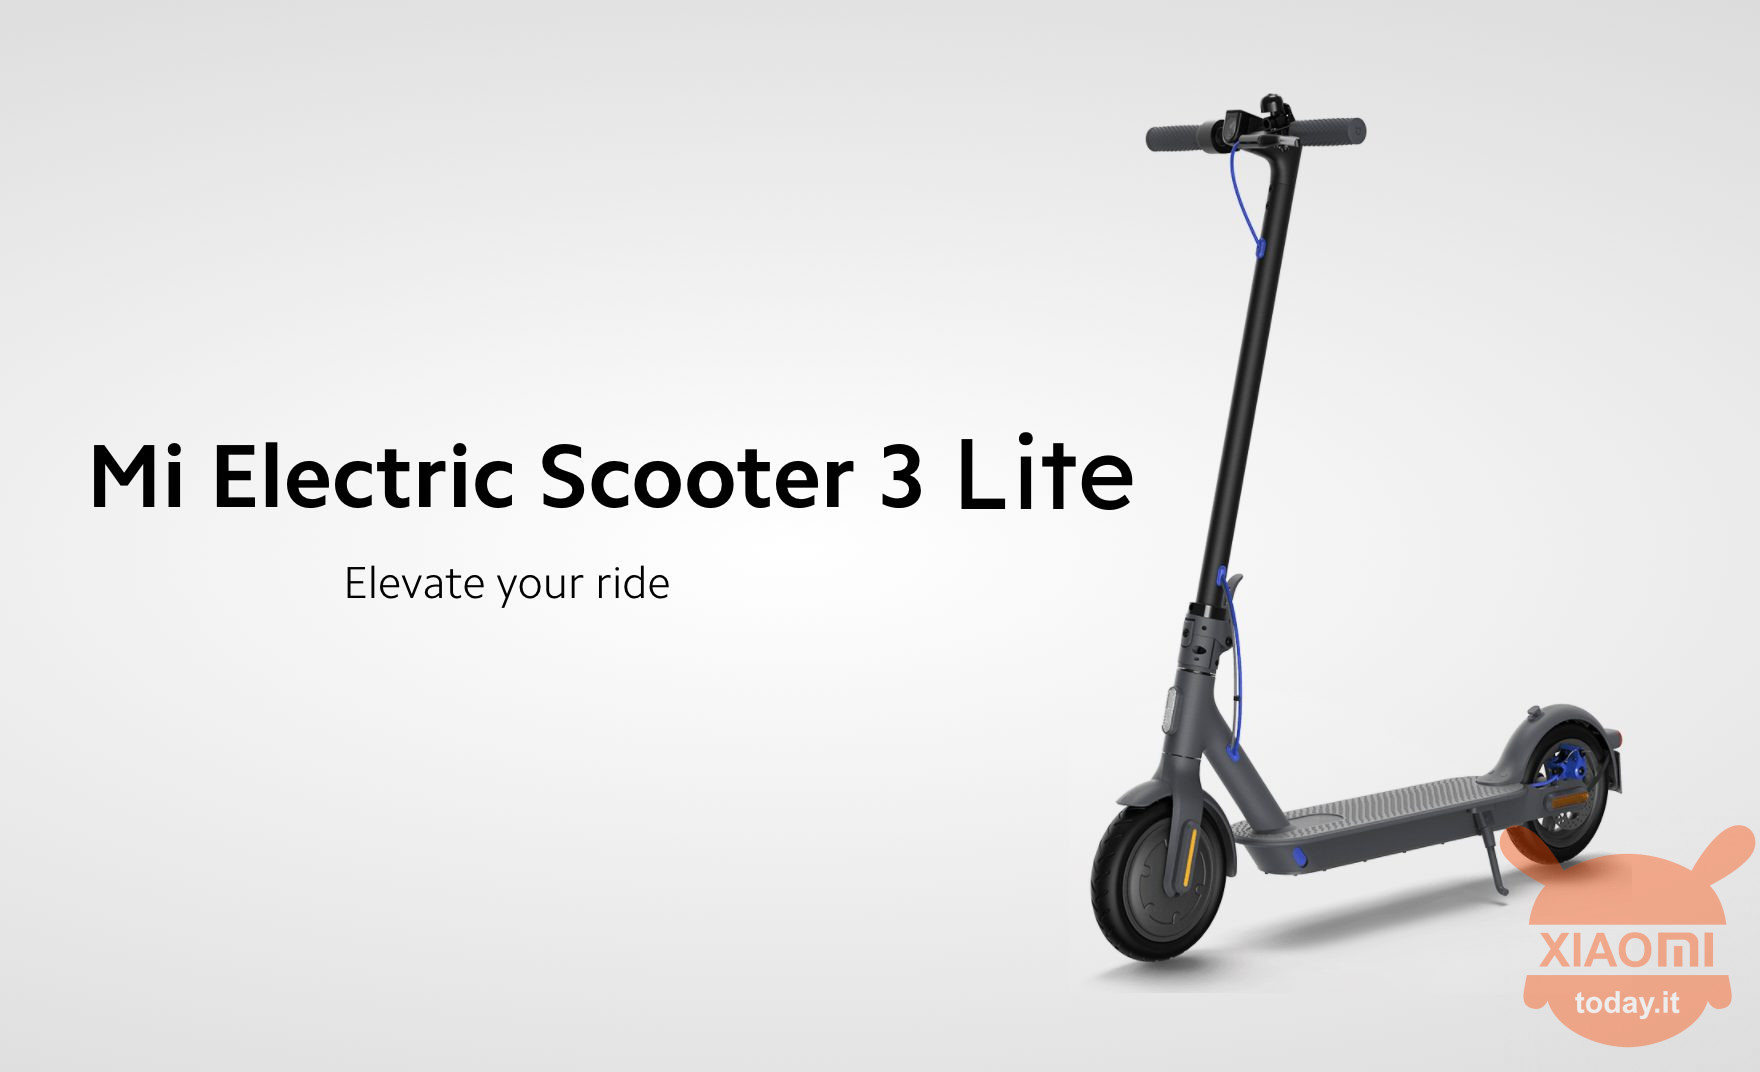 xiaomi mi electric scooter 3 lite